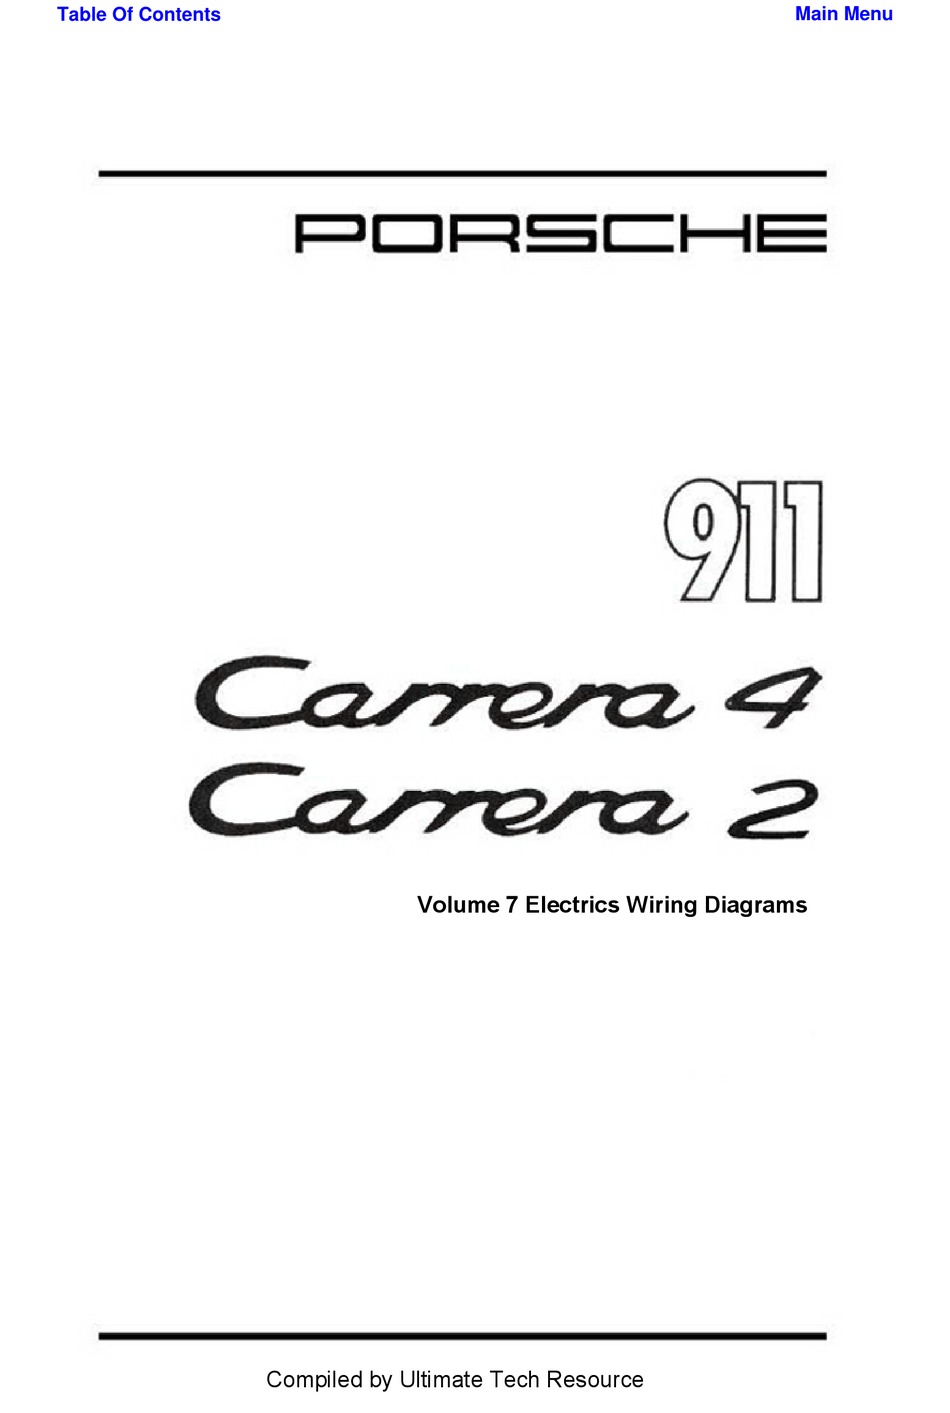 Porsche 911 Volume 7 Electrics Wiring